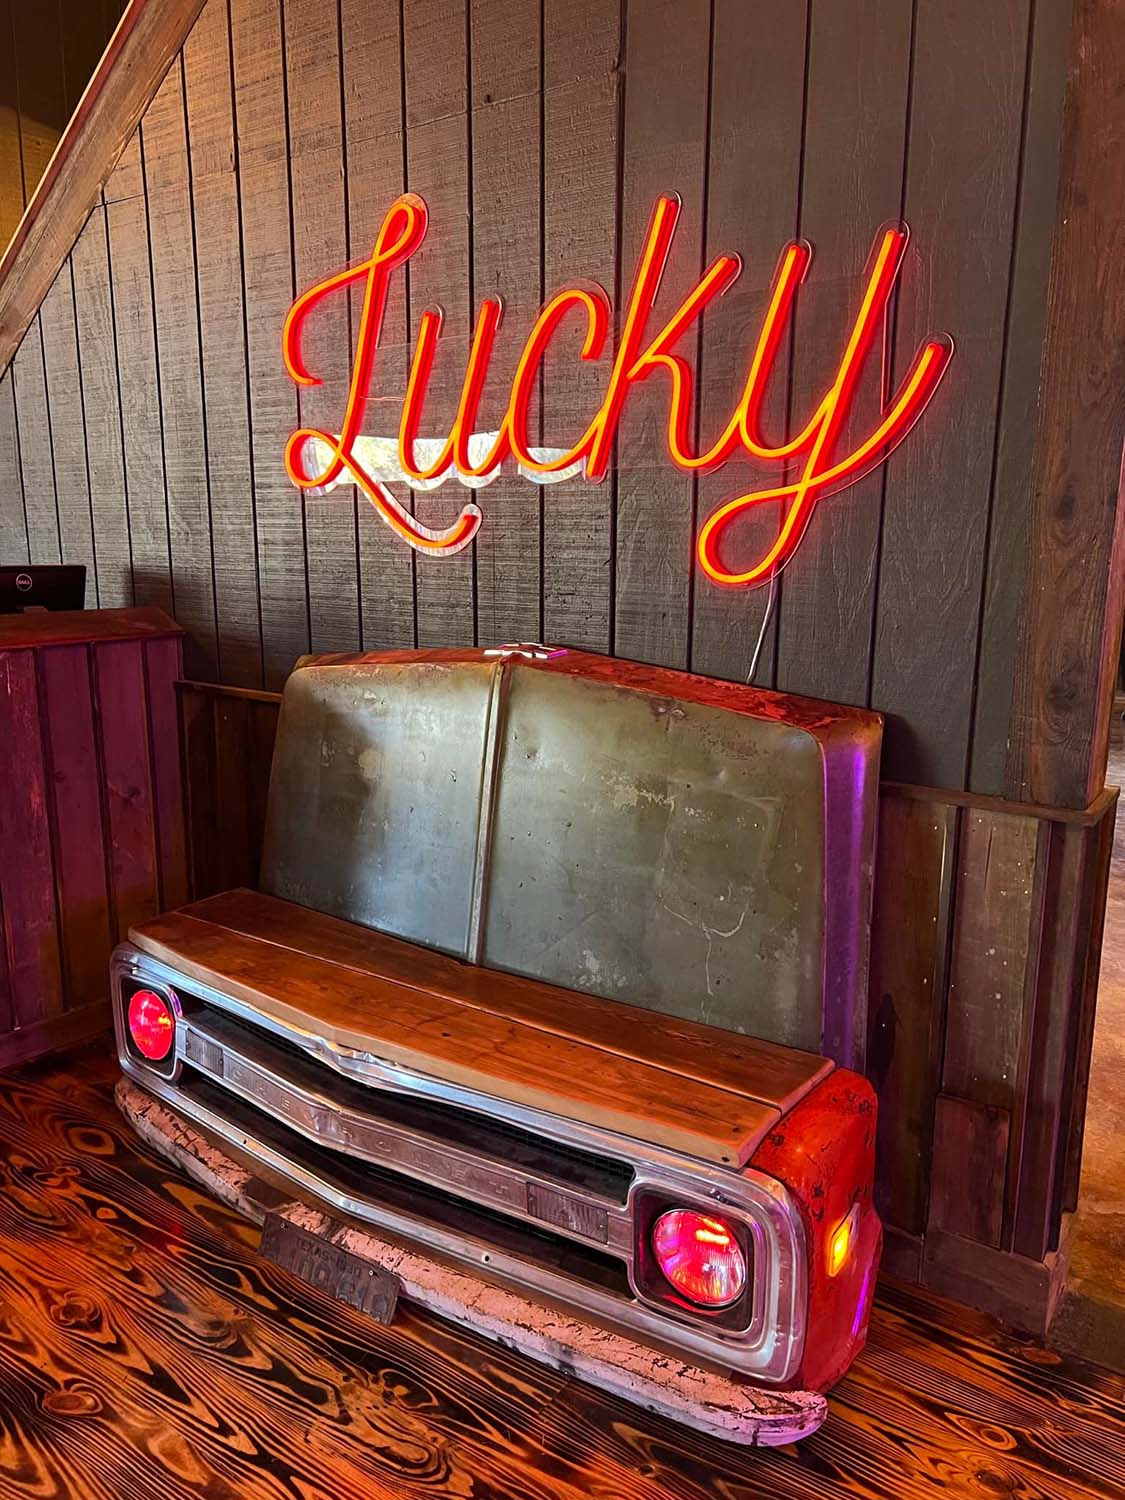 Lucky Rabbit Live Music Bar & Kitchen - Jonestown, TX